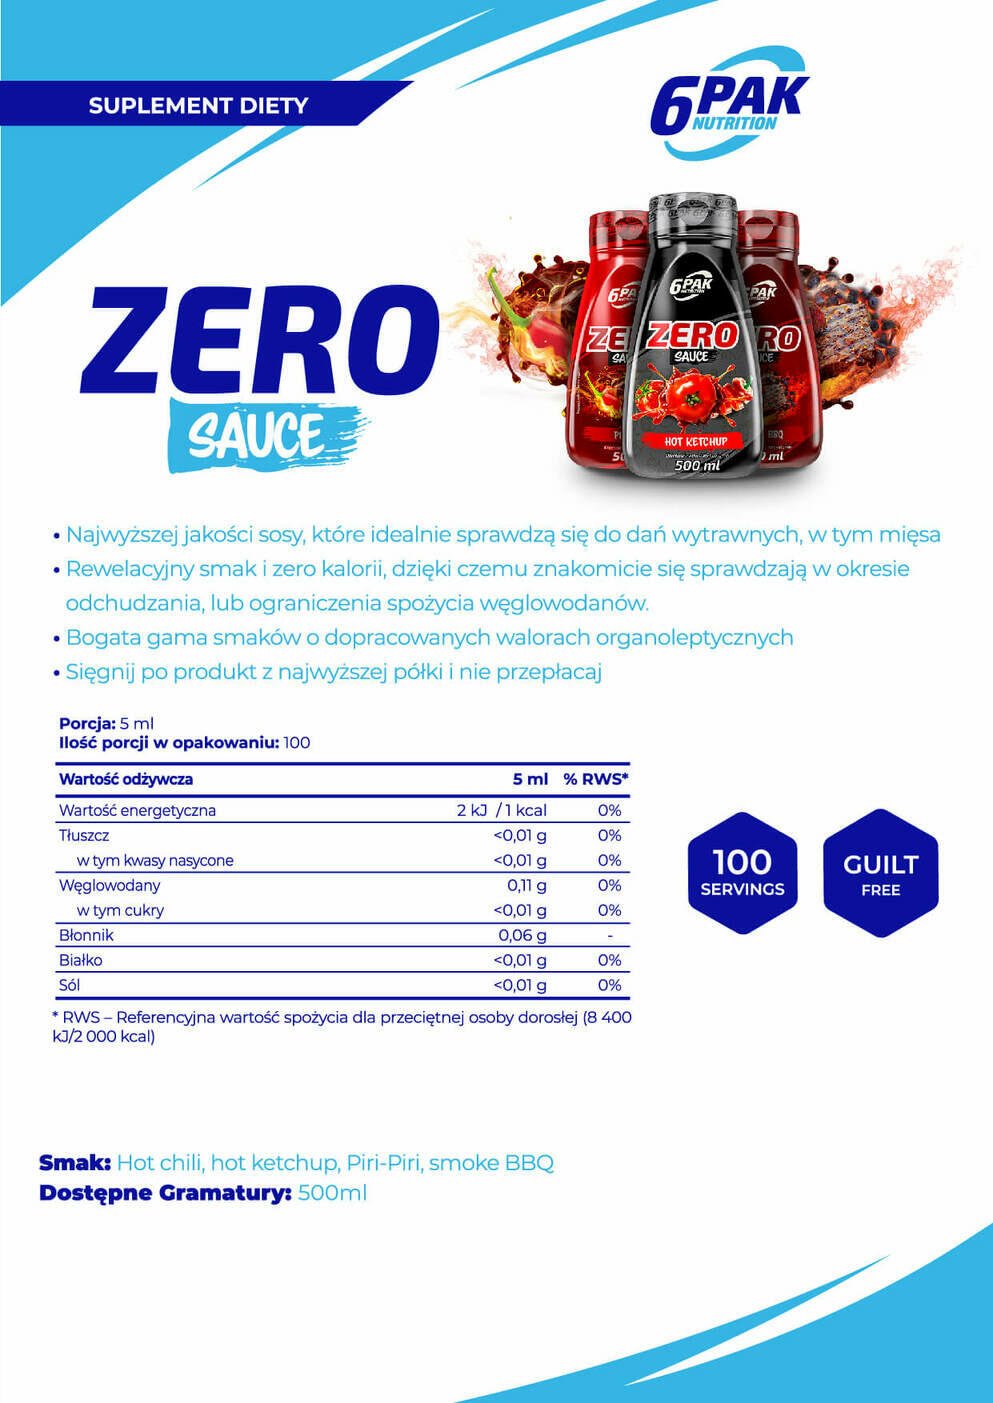 6PAK Nutrition Sauce ZERO Piri-Piri - 500ml